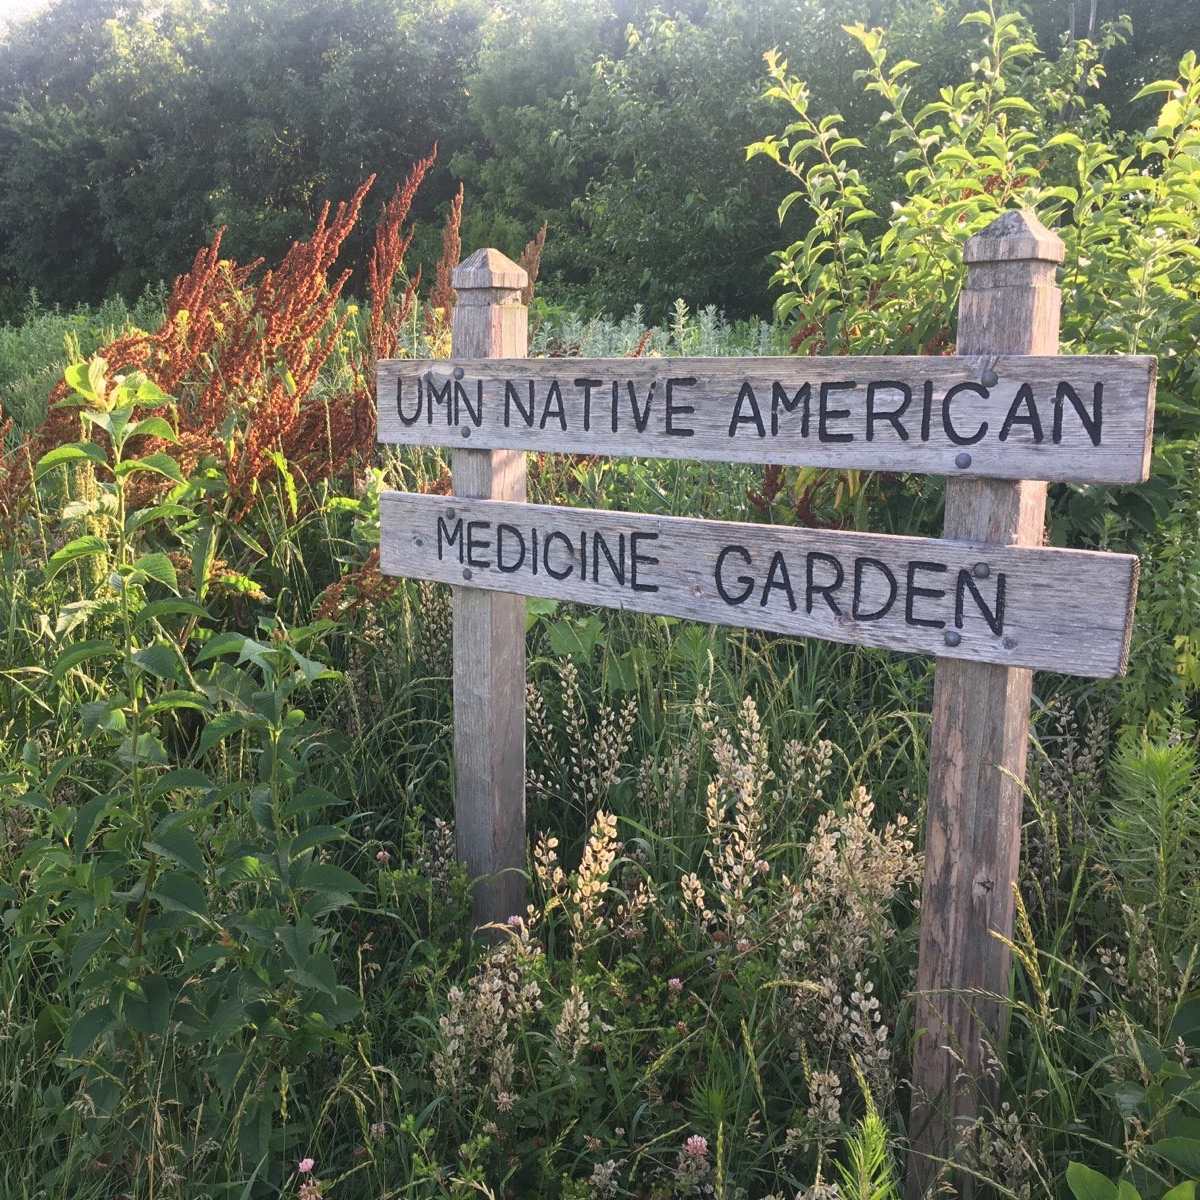 wooden sign for UMN Native American Medicine Garden